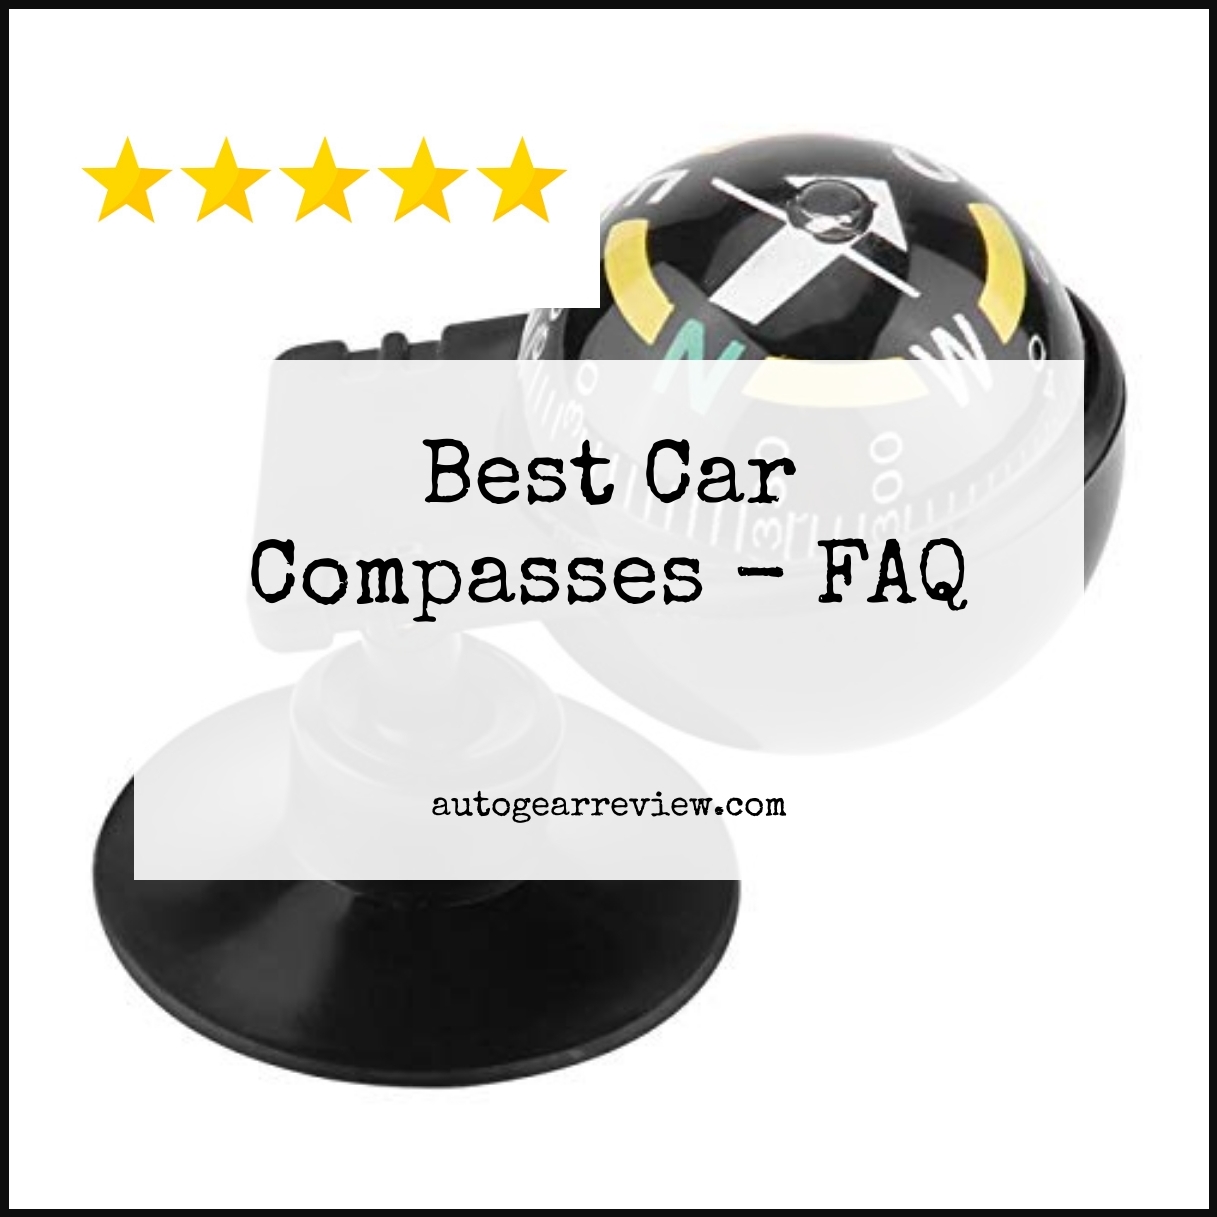 Best Car Compasses - FAQ